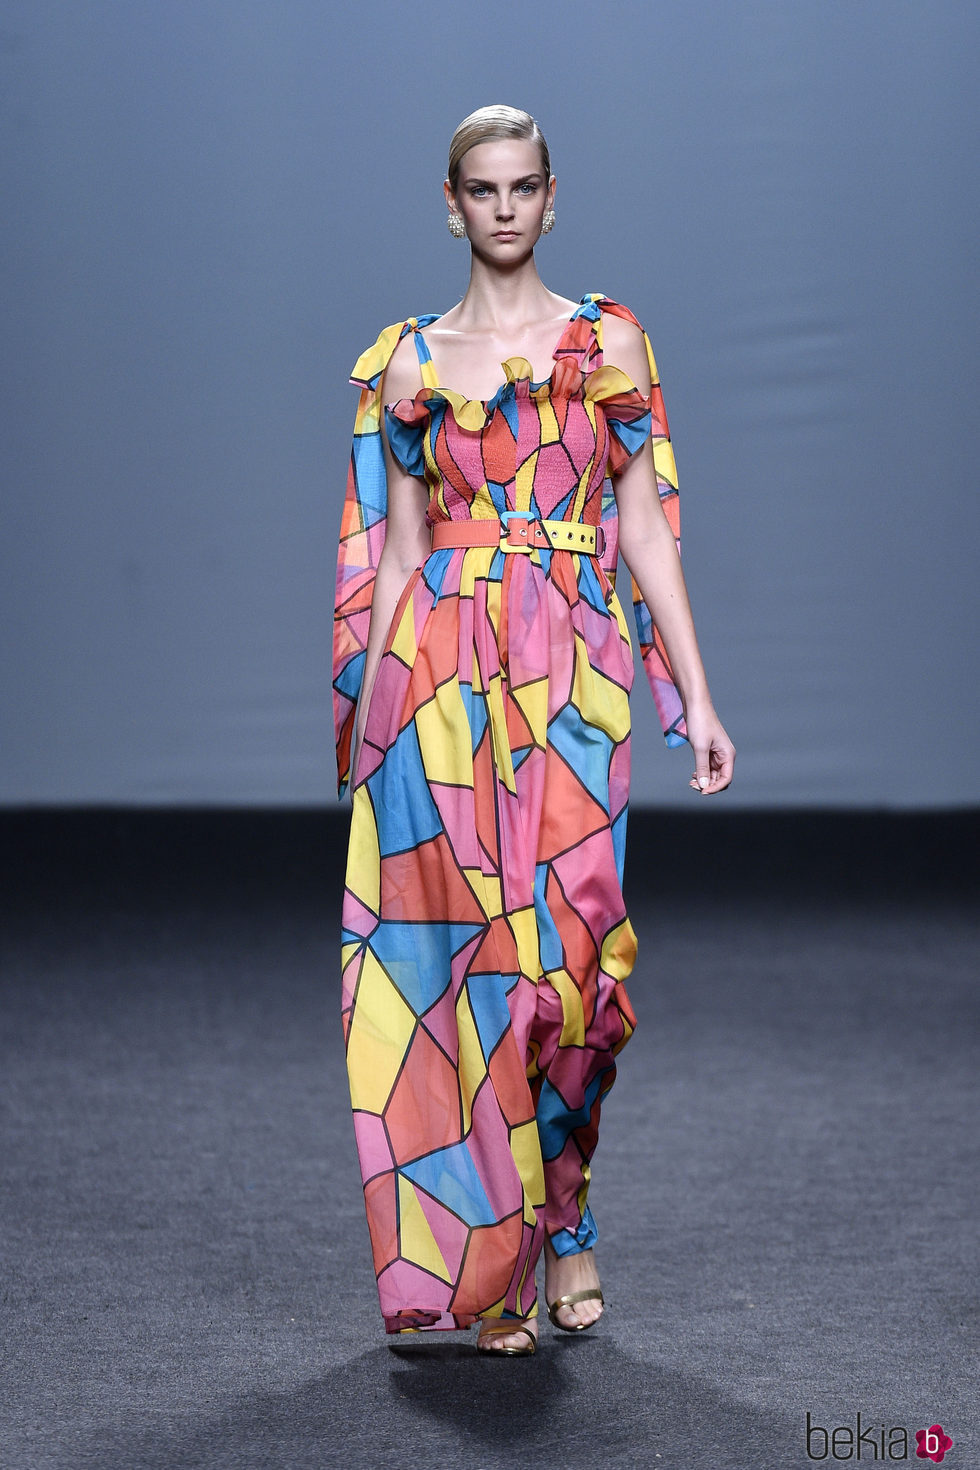 Vestido largo estampado de colores de María Escoté primavera/verano 2018 para Madrid Fashion Week